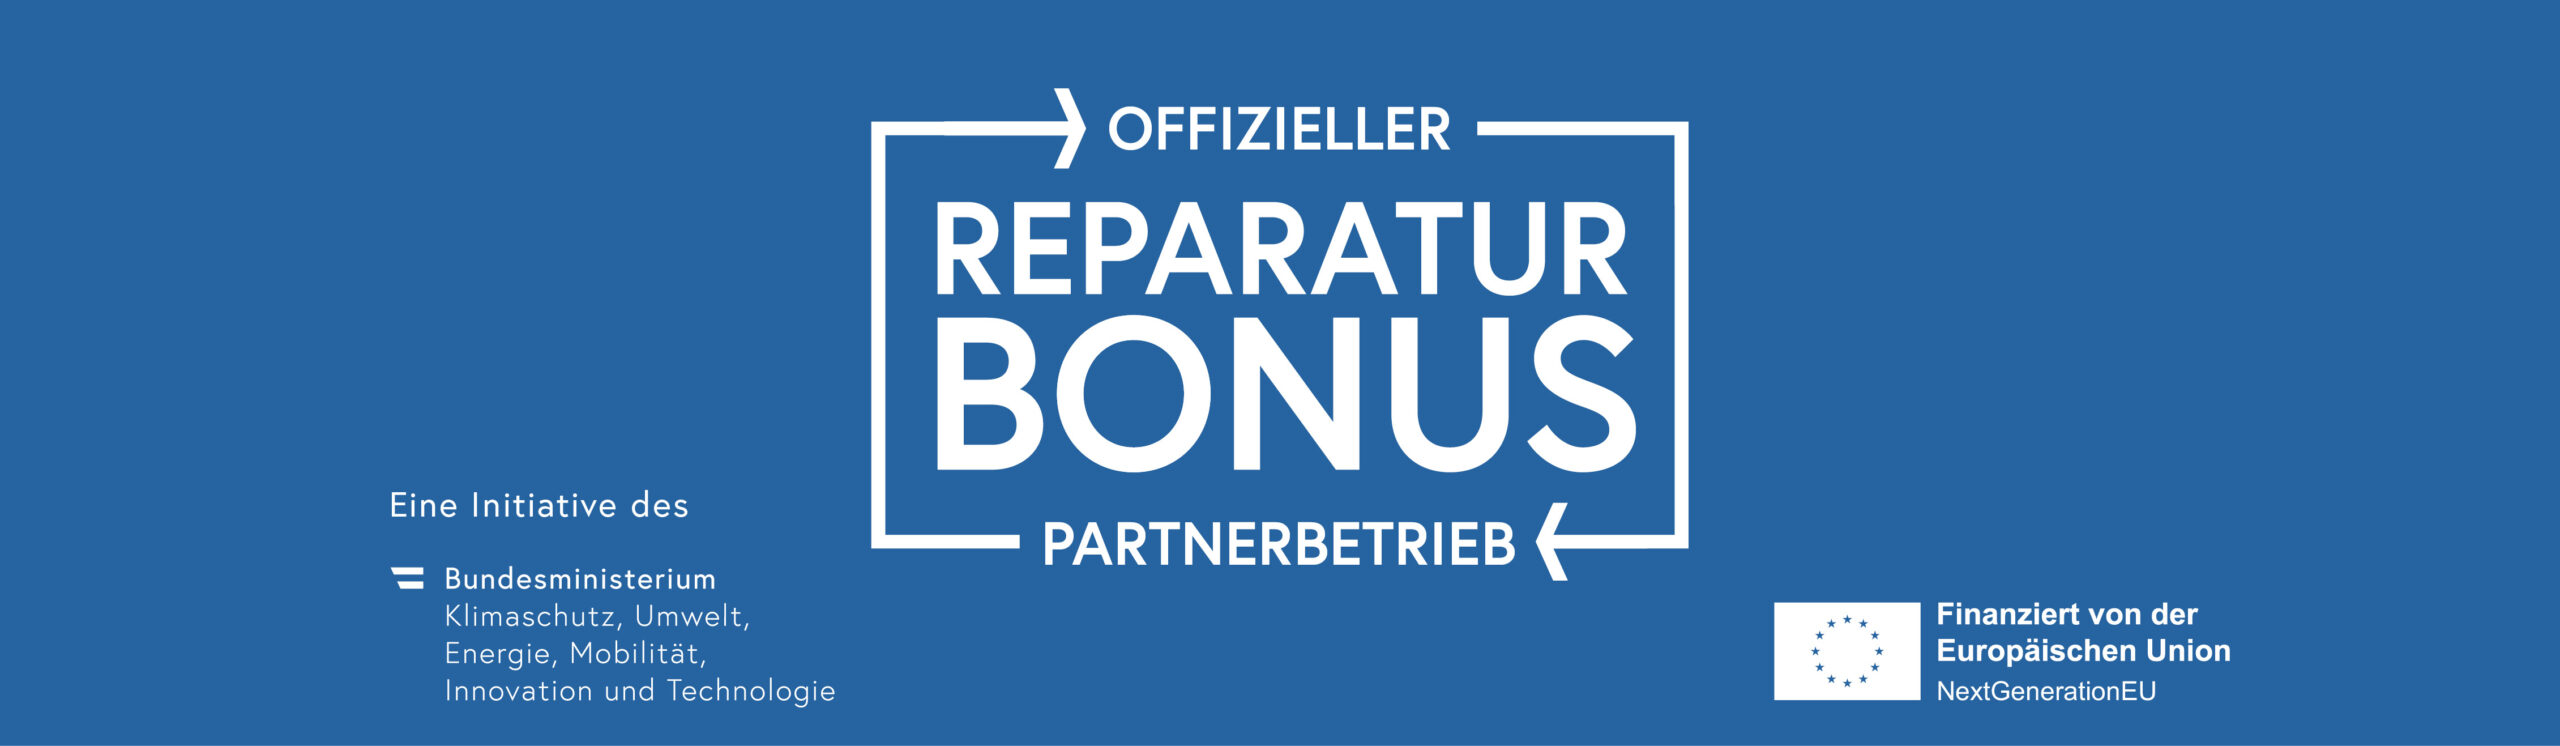 Partnerbetrieb Reparatur Bonus